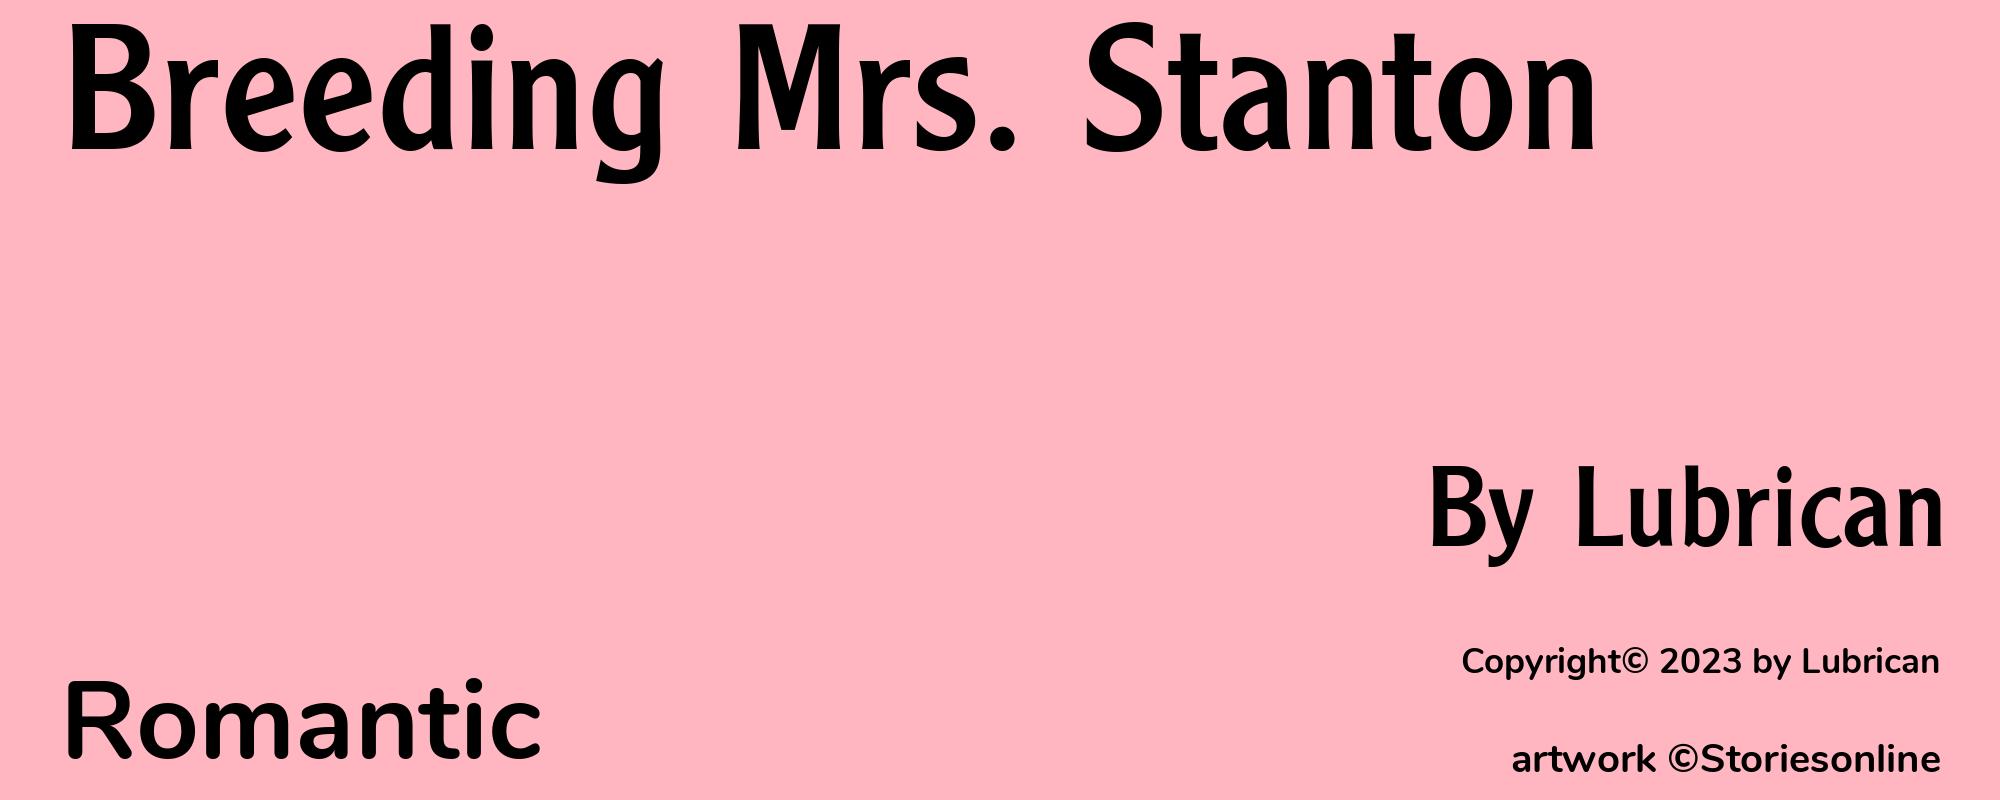 Breeding Mrs. Stanton - Cover